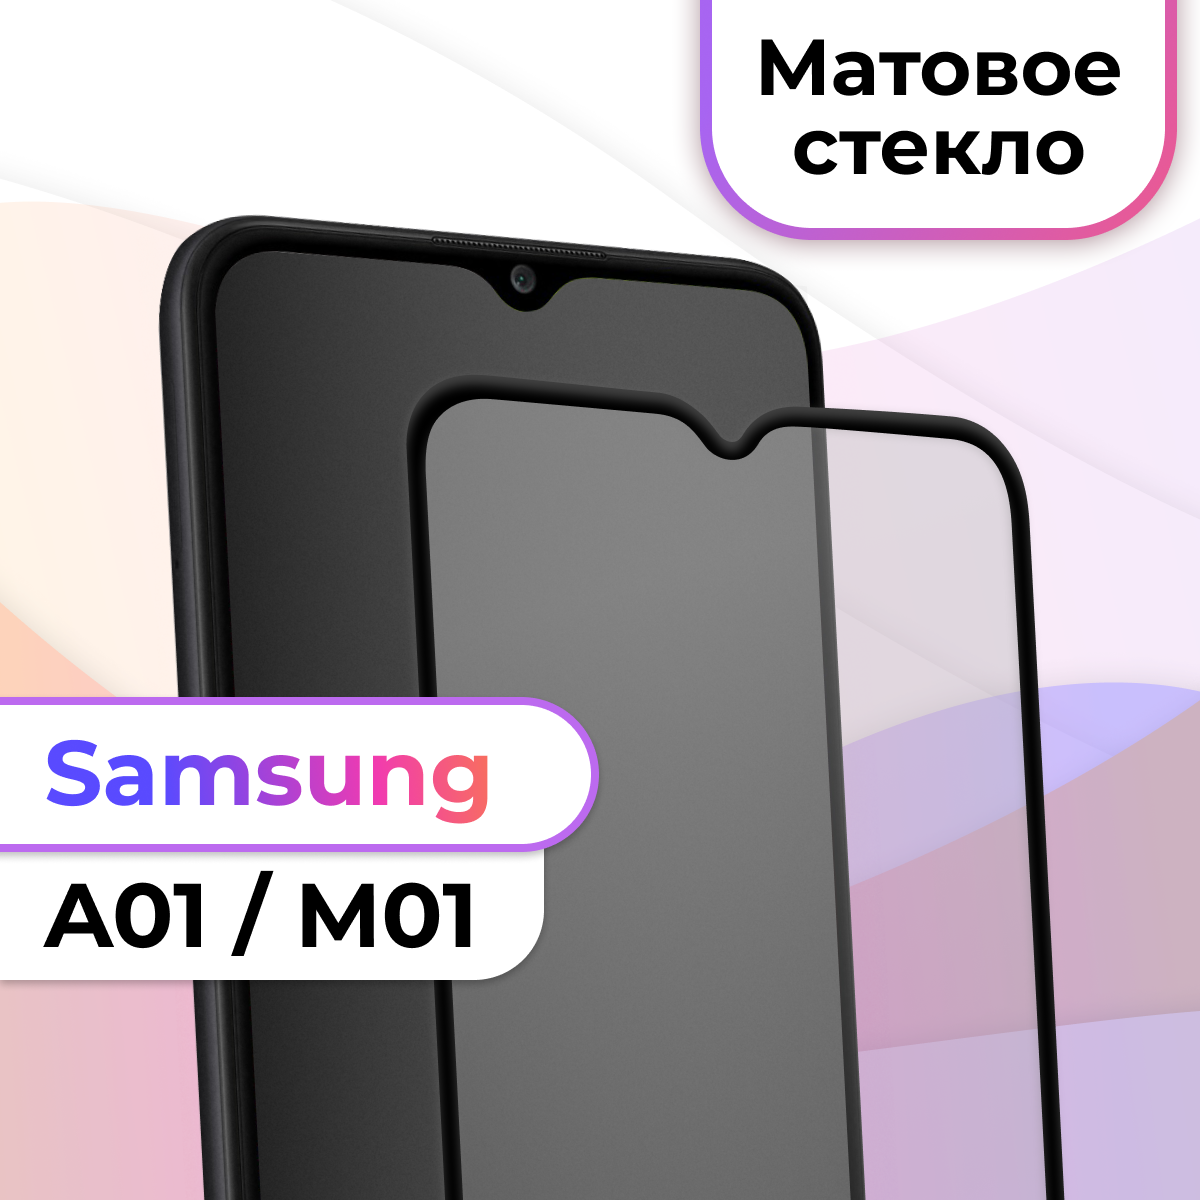 Матовое защитное стекло на телефон Samsung Galaxy A01, M01 / Противоударное стекло на весь экран для смартфона Самсунг Галакси А01, М01